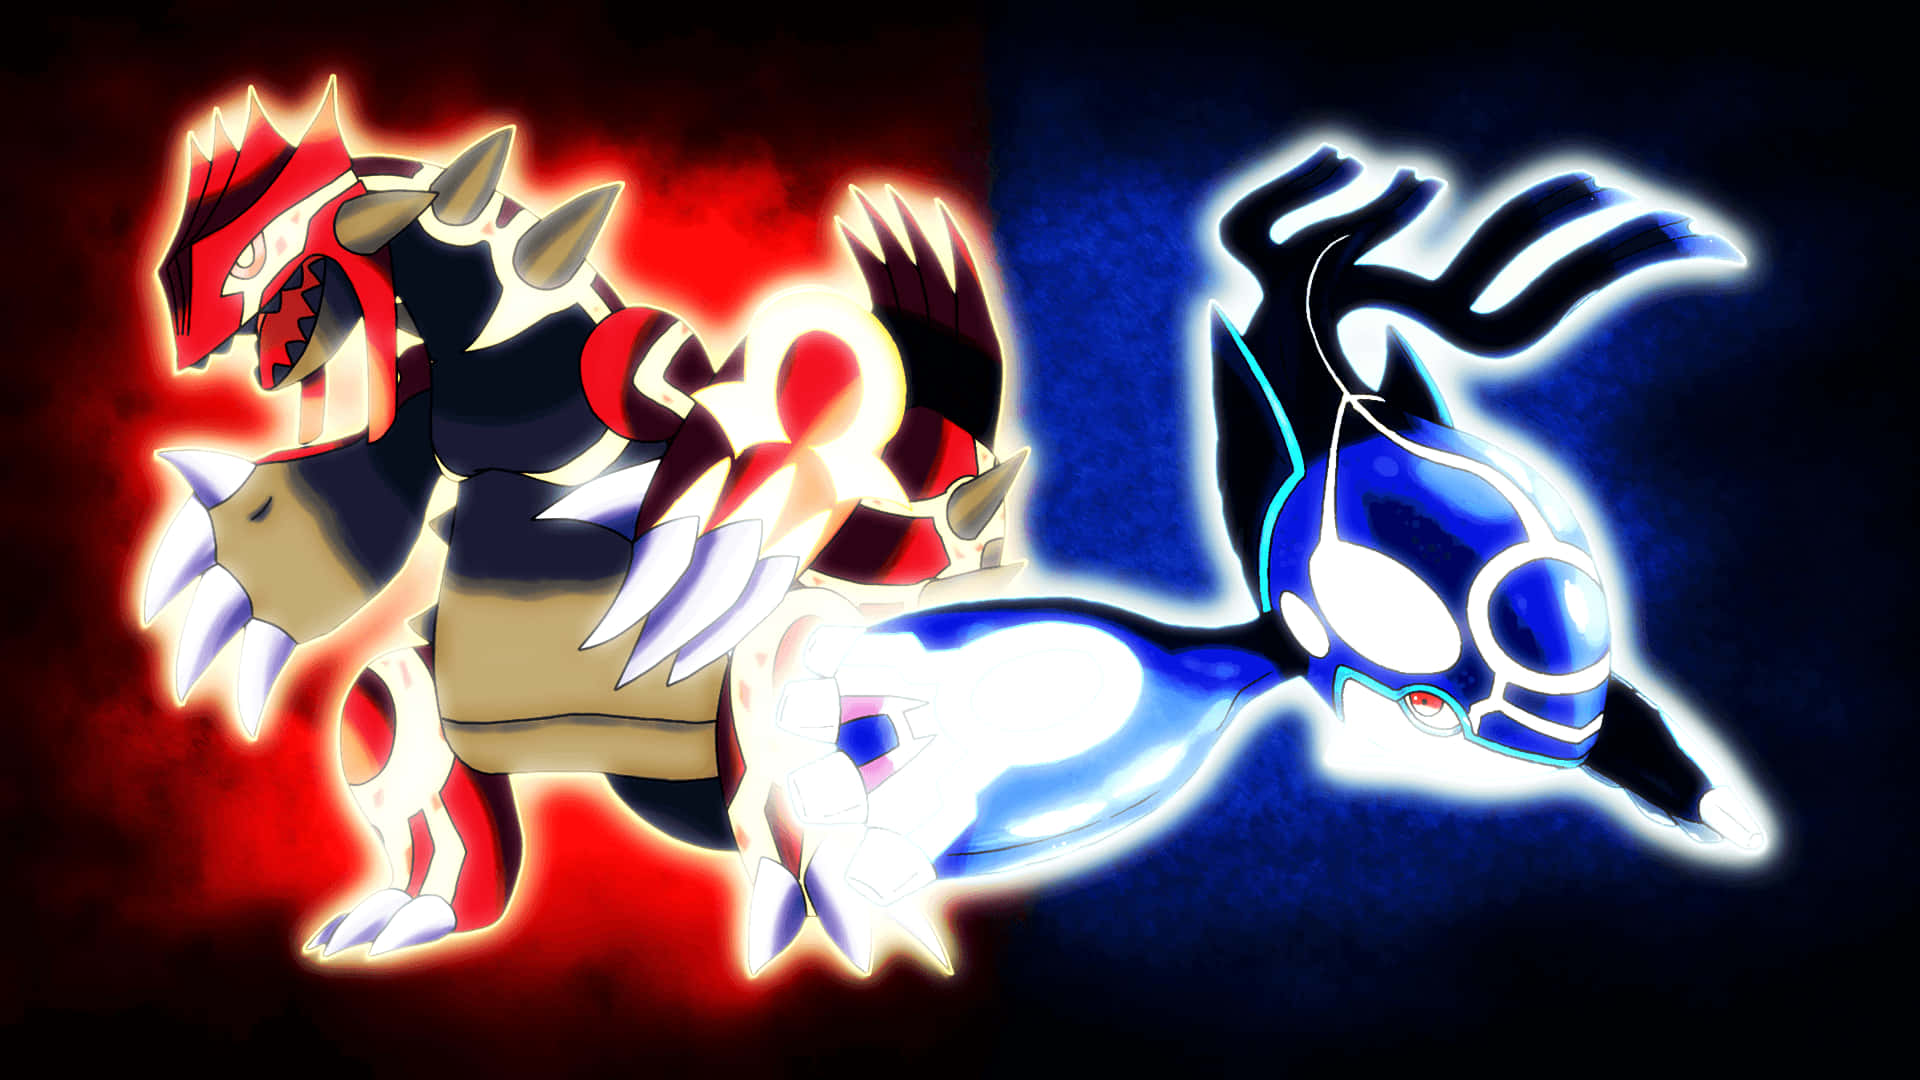 Shiny Mega Rayquaza vs Shiny Primal Groudon and Kyogre 